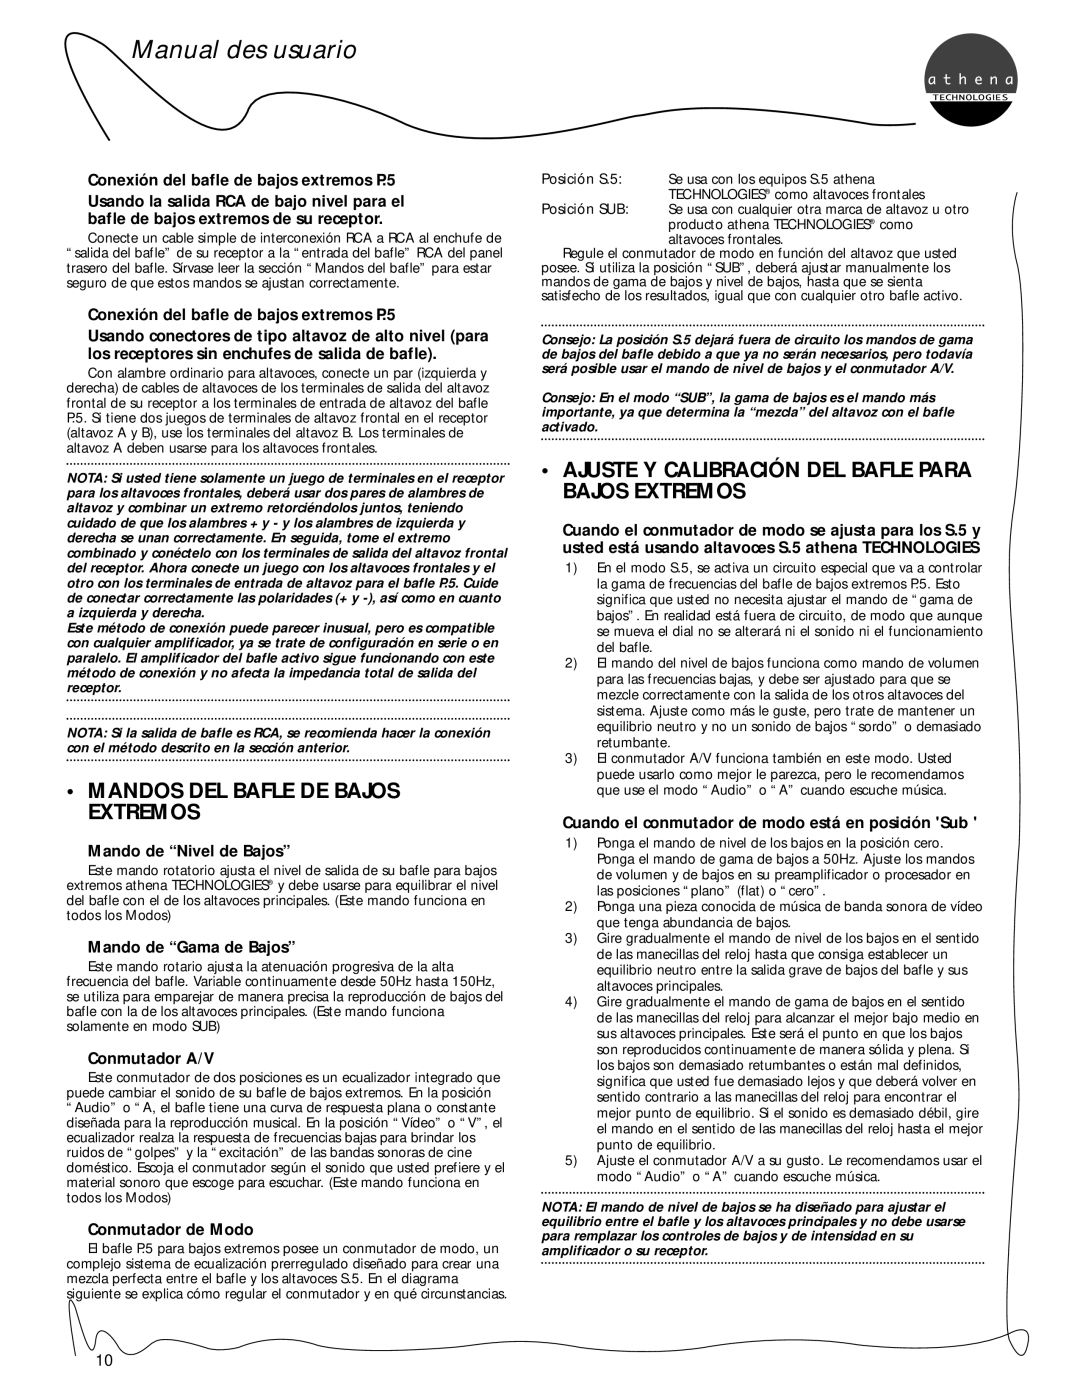 Athena Technologies Mandos Del Bafle De Bajos Extremos, Manual des usuario, Conexión del bafle de bajos extremos P.5 